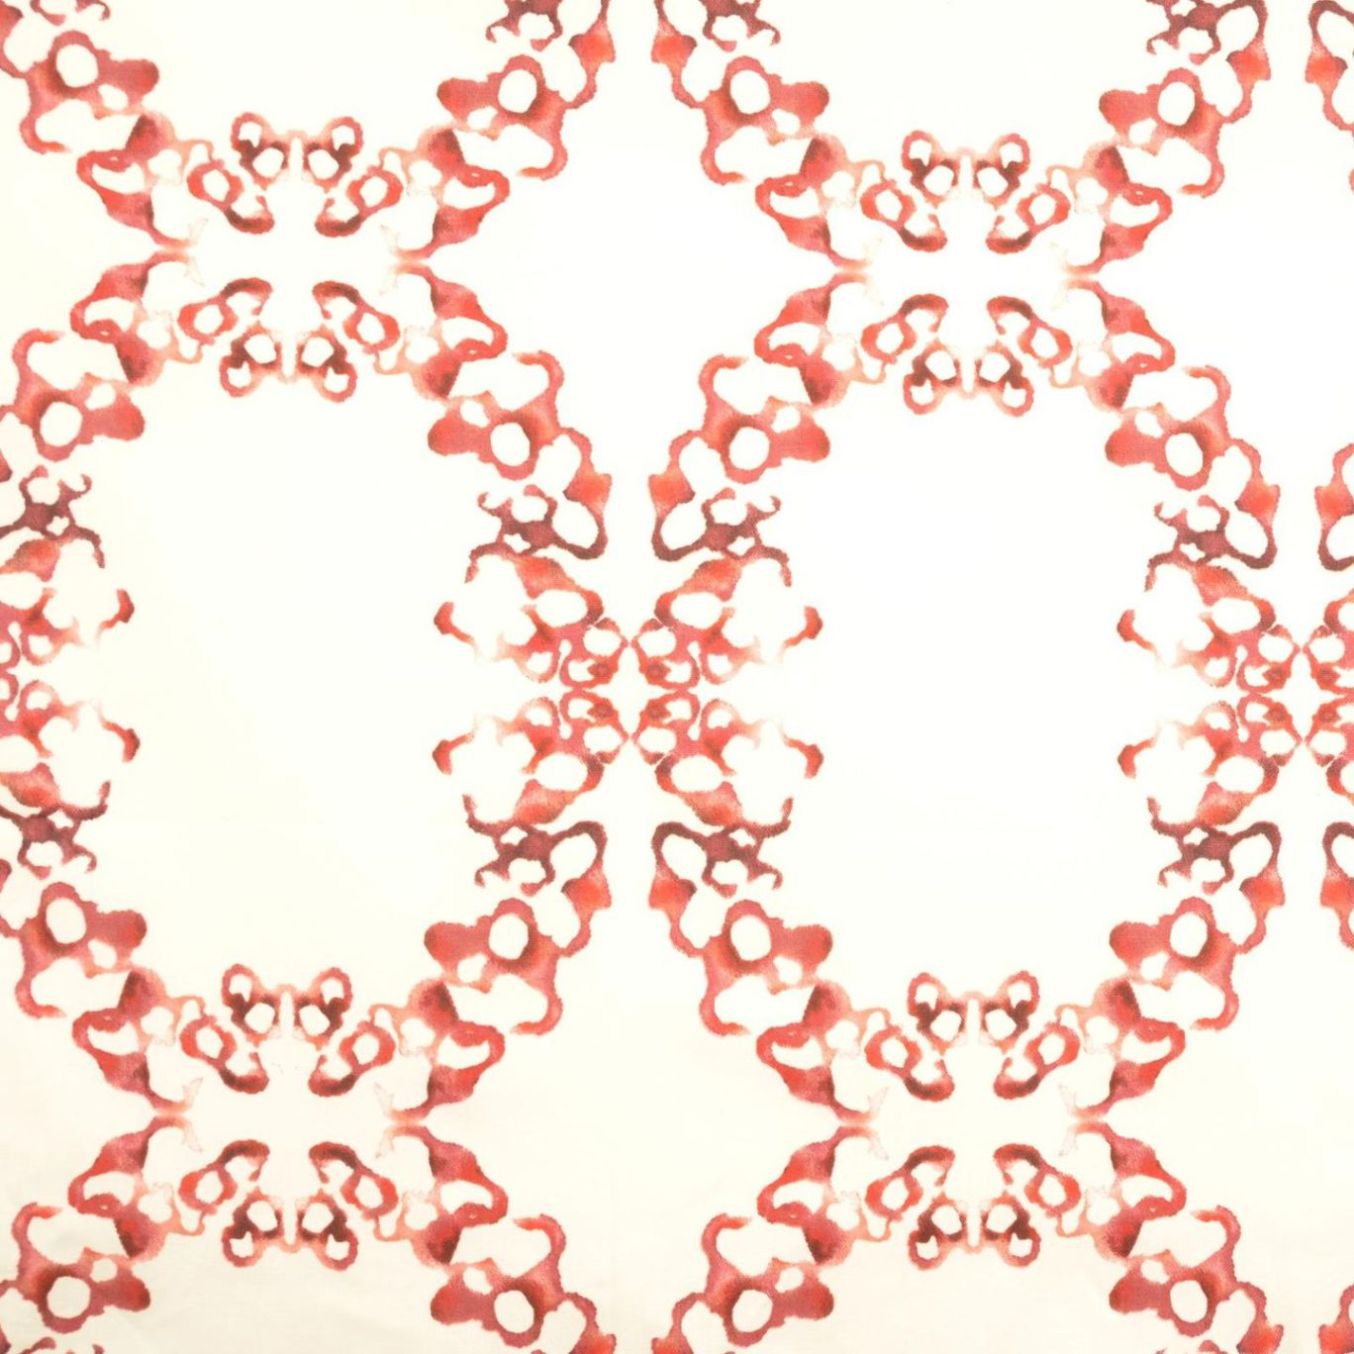 Mirror glow en hissgardin i bomull. Mått 100 x 140 cm. Färg: Vit botten med ett rosa mönster.